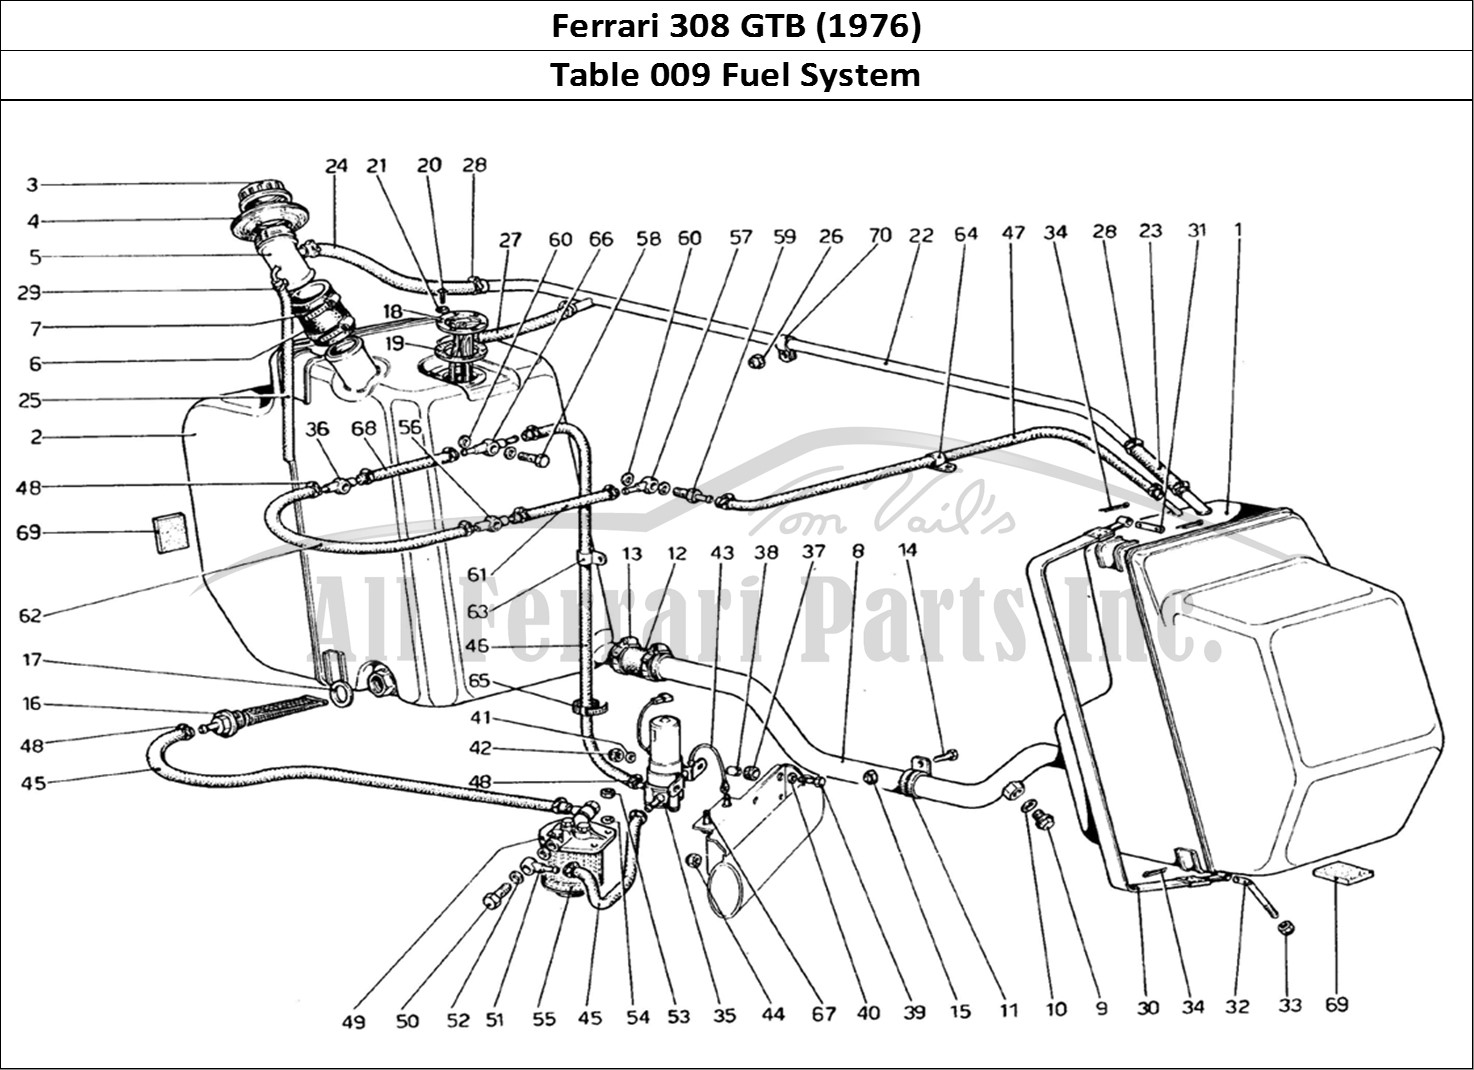 Ferrari Parts Ferrari 308 GTB (1976) Page 009 Fuel System